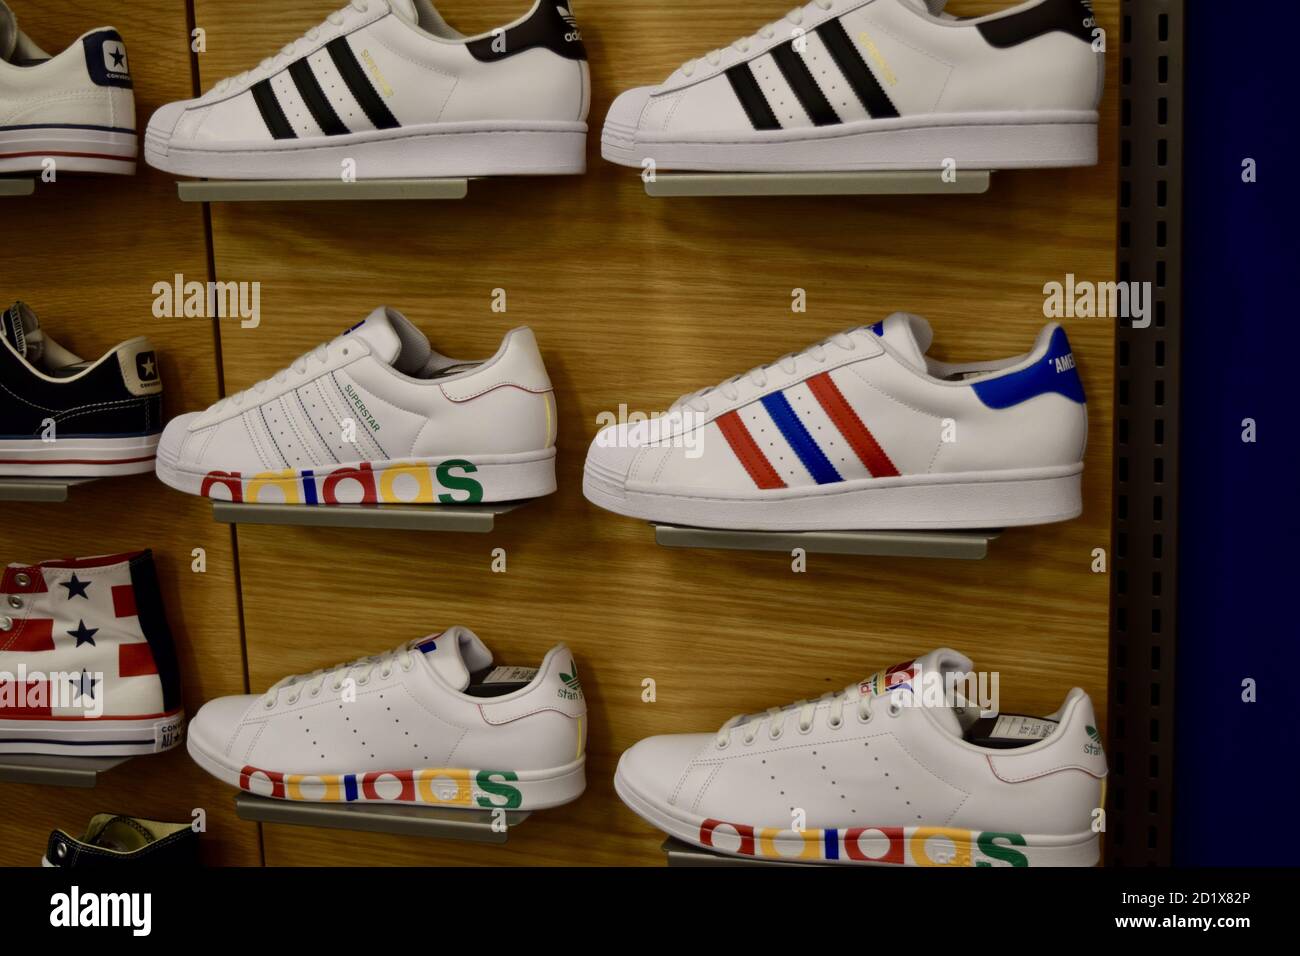 FRESNO, USA - 01. Sep 2020: Neue bunte Adidas Schuhe an der Ladenwand mit  farbigen Streifen Stockfotografie - Alamy